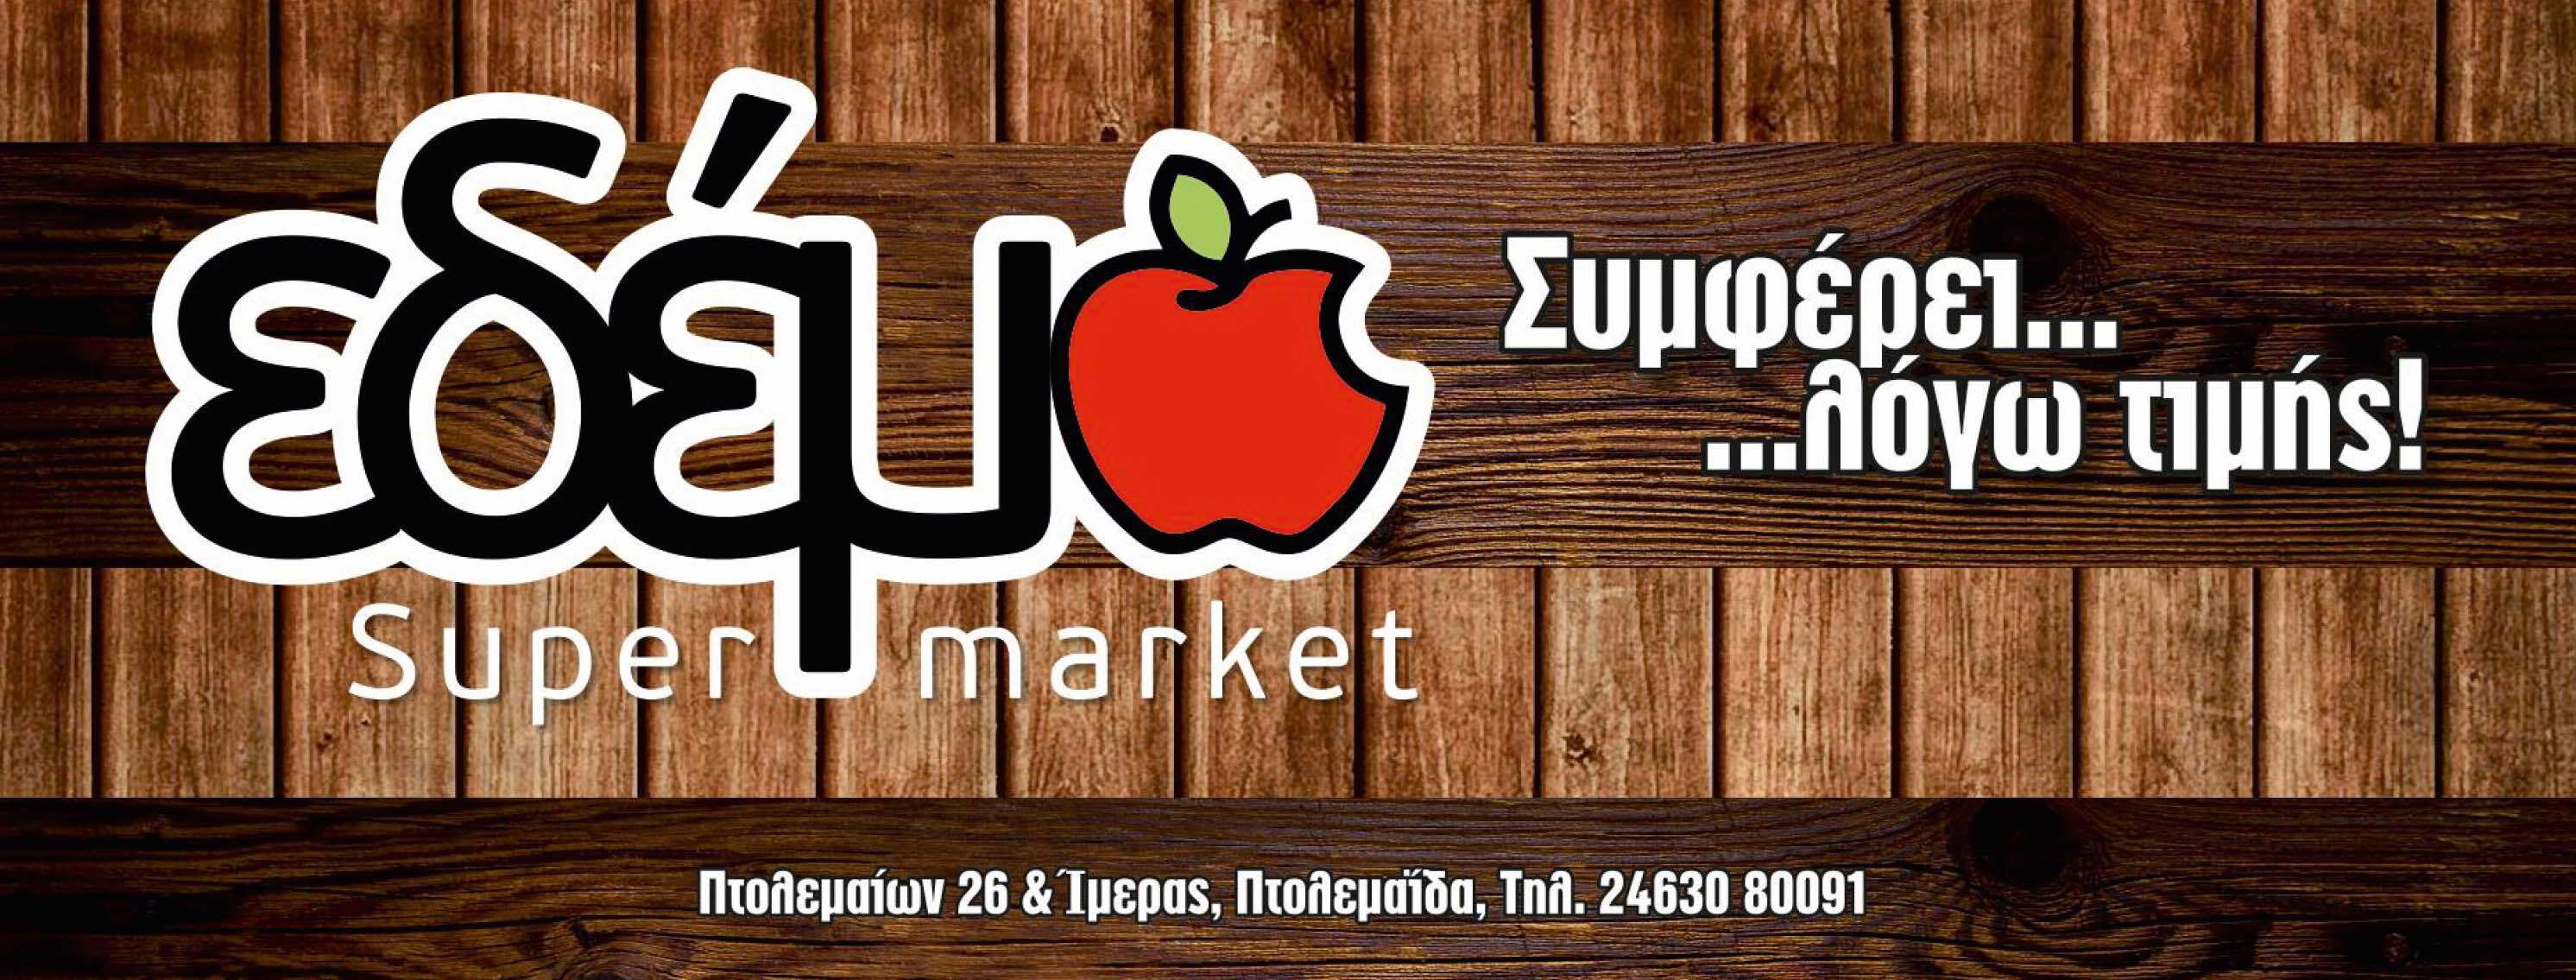 Λογότυπο του super market Edem σε ξύλινο φόντο με ένα κόκκινο δαγκωμένο μήλο και τη διεύθυνση